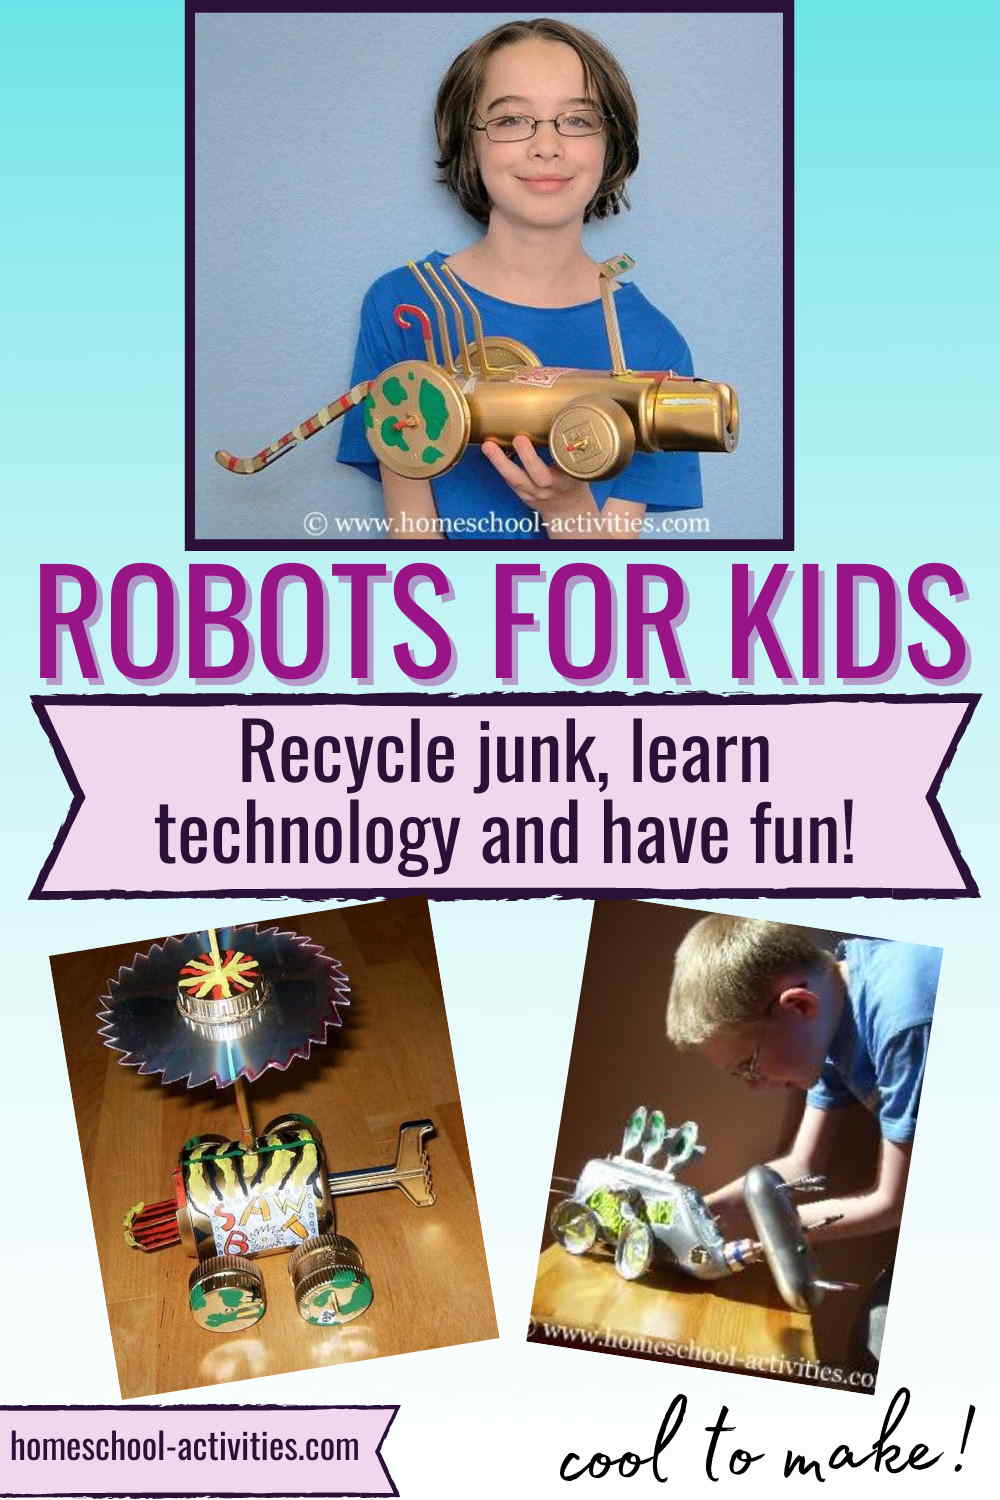 Build a Robot - Razor Robotics